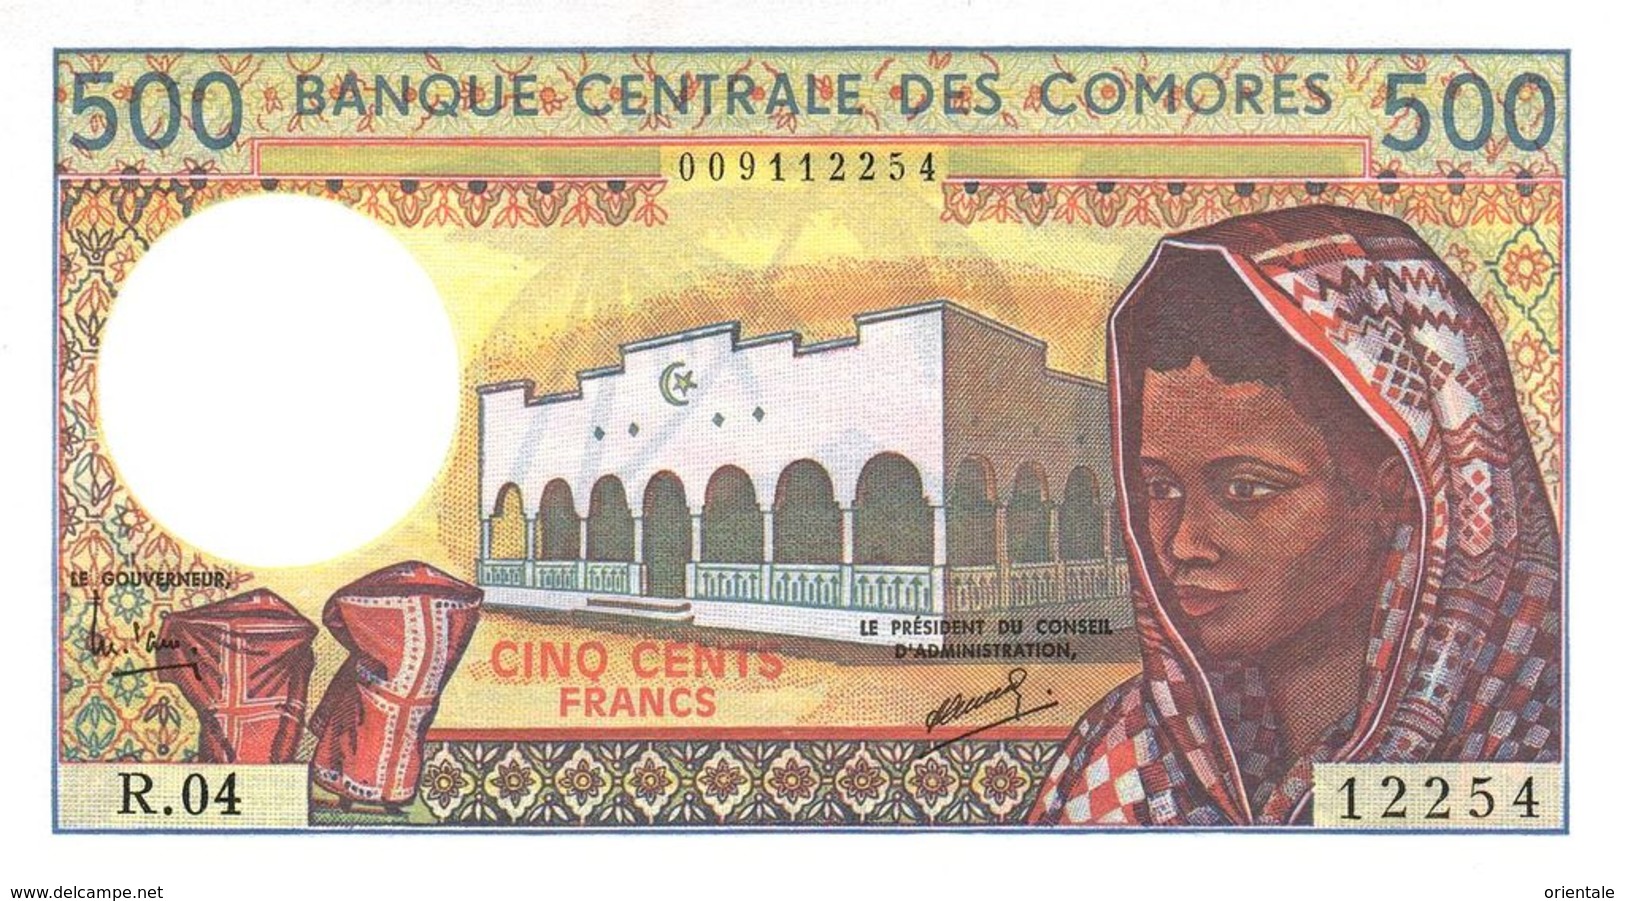 COMOROS P. 10b 500 F 1997 UNC (s. 8) - Comoren